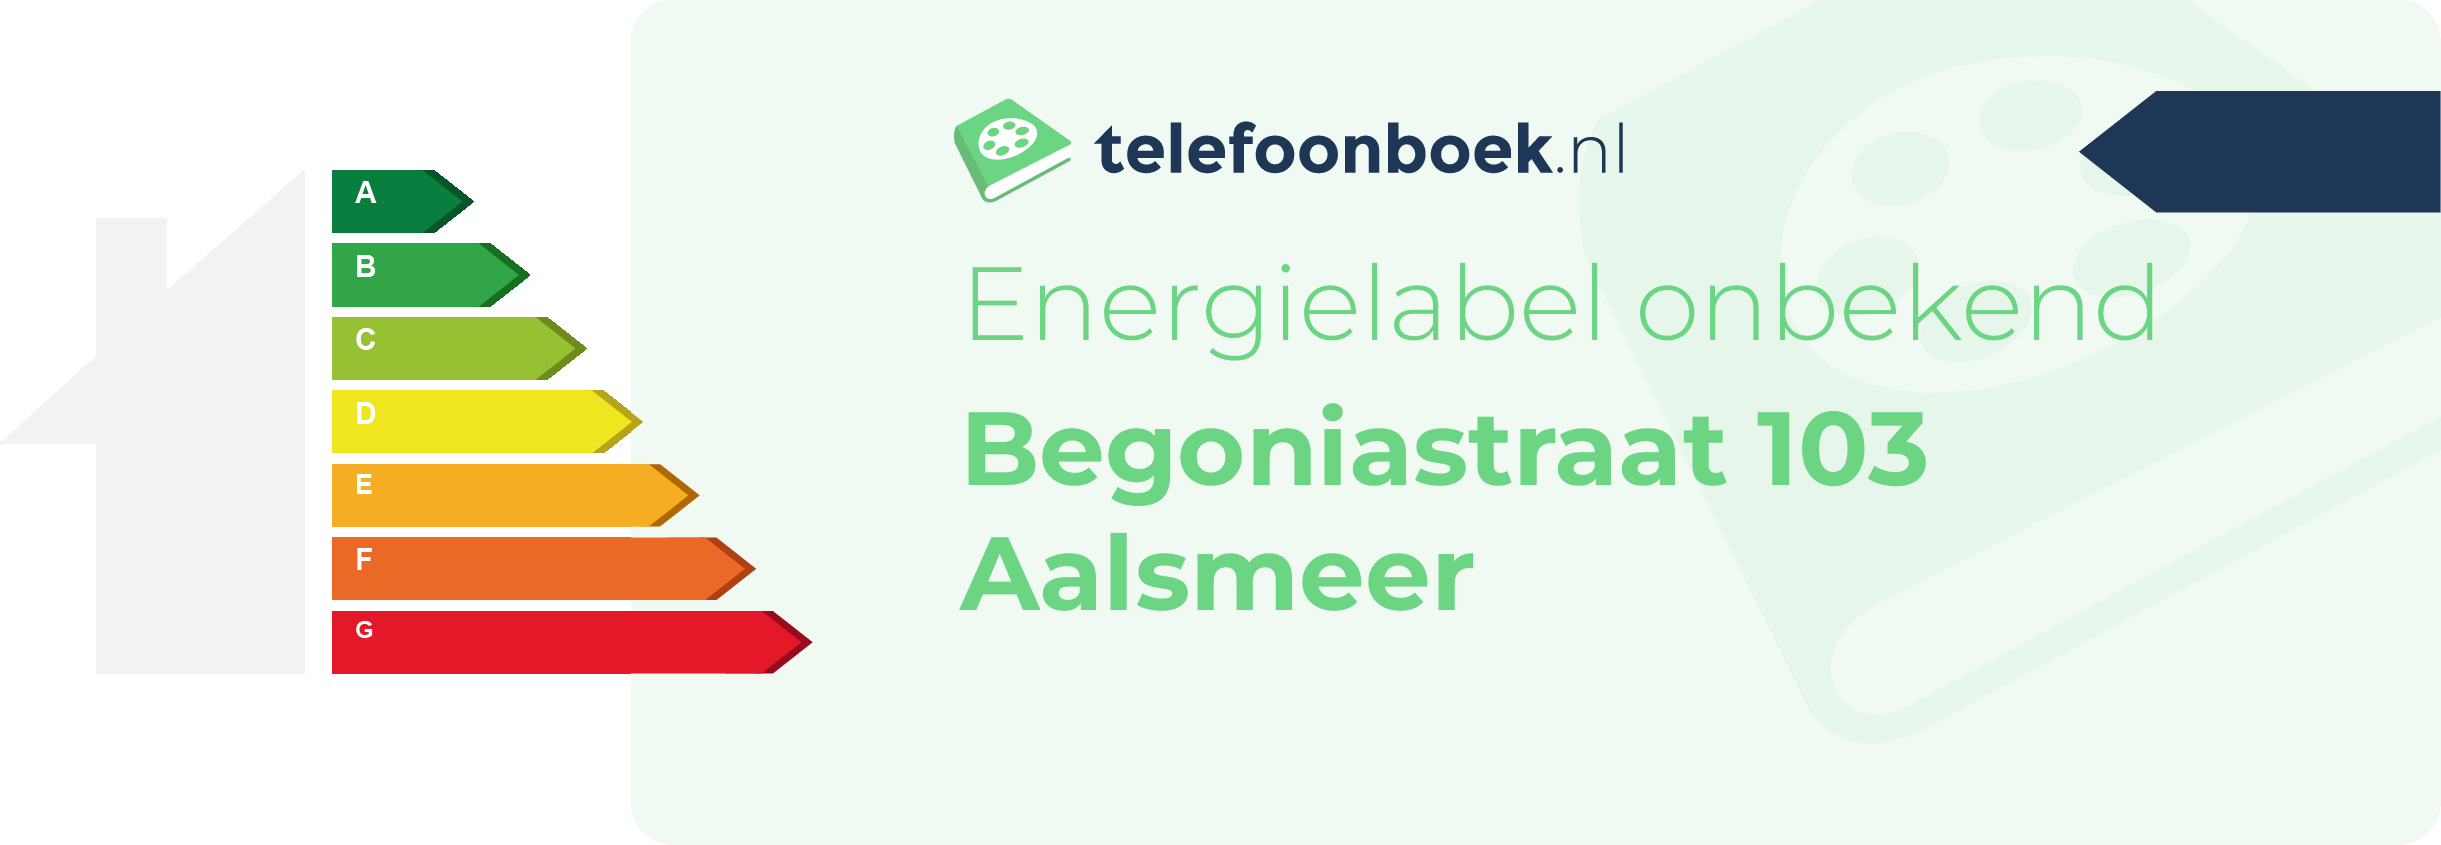 Energielabel Begoniastraat 103 Aalsmeer